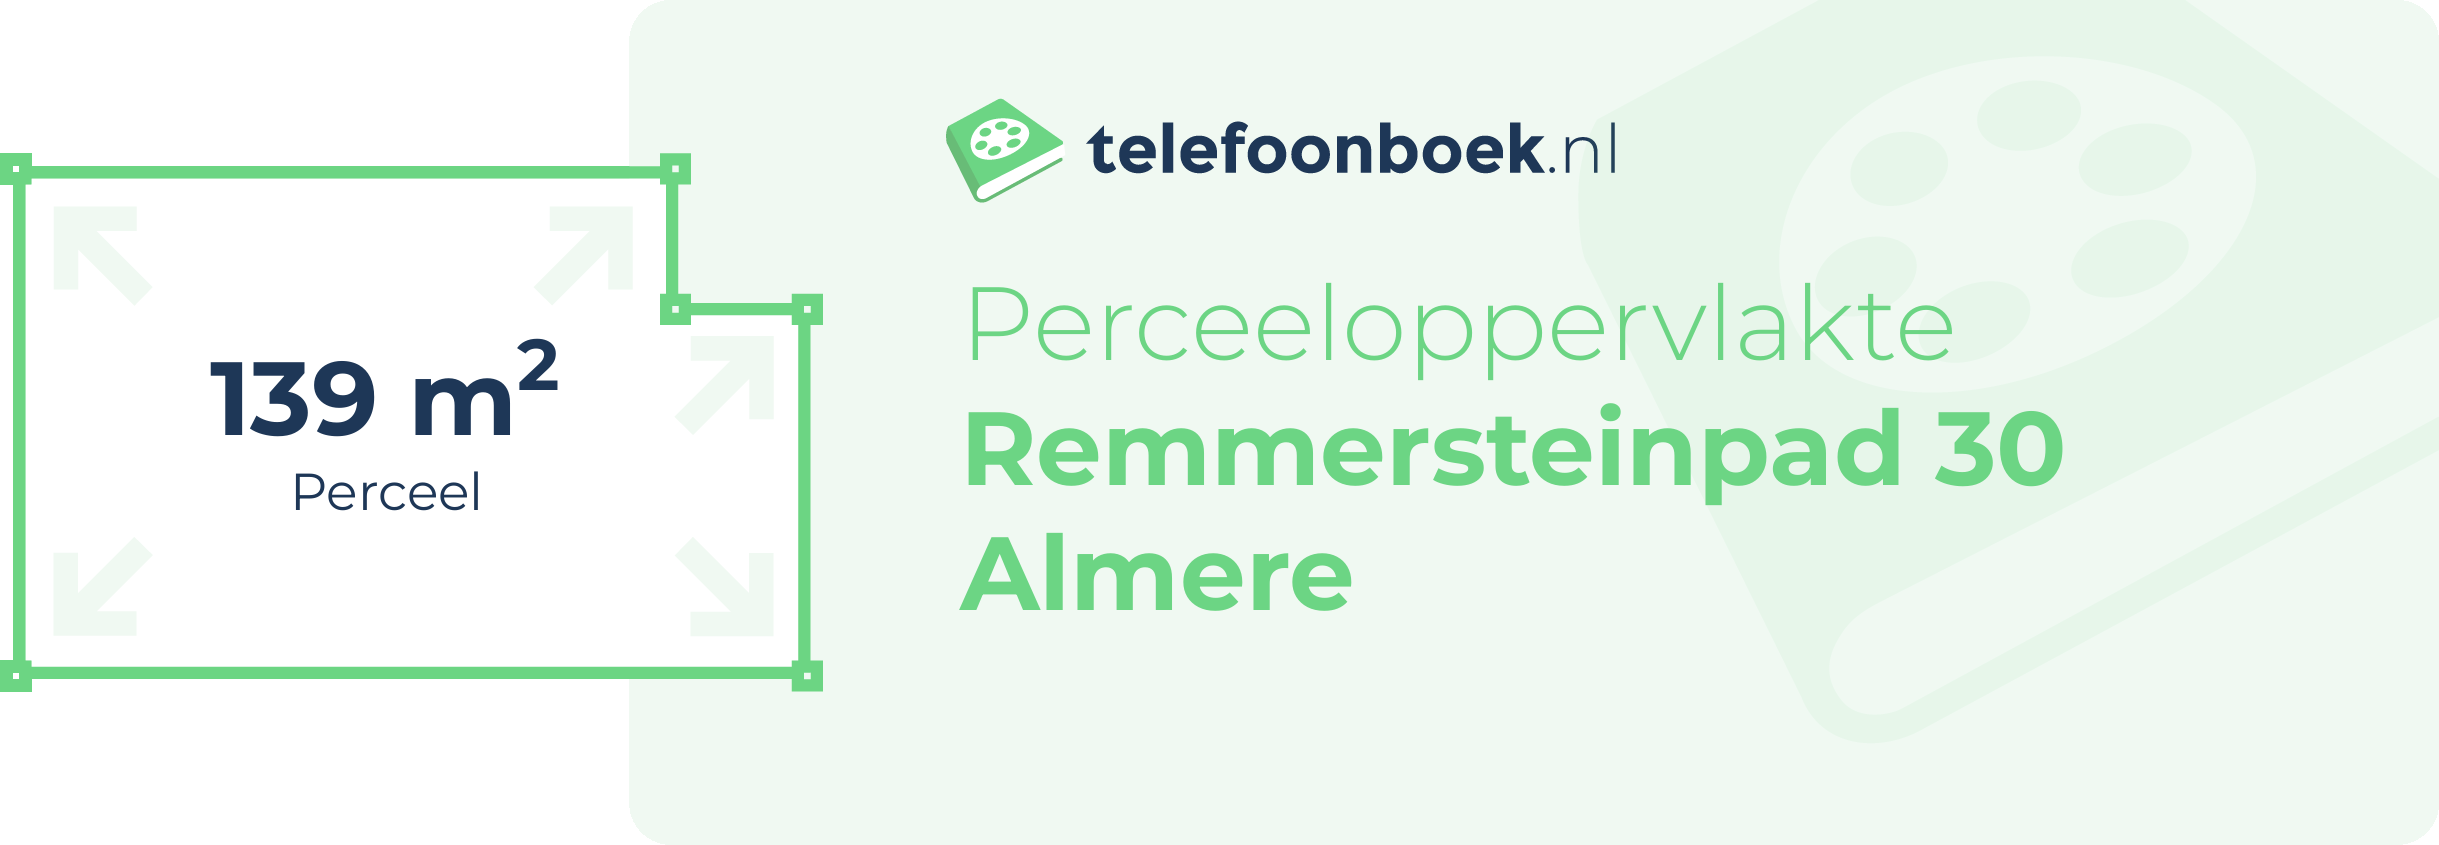 Perceeloppervlakte Remmersteinpad 30 Almere